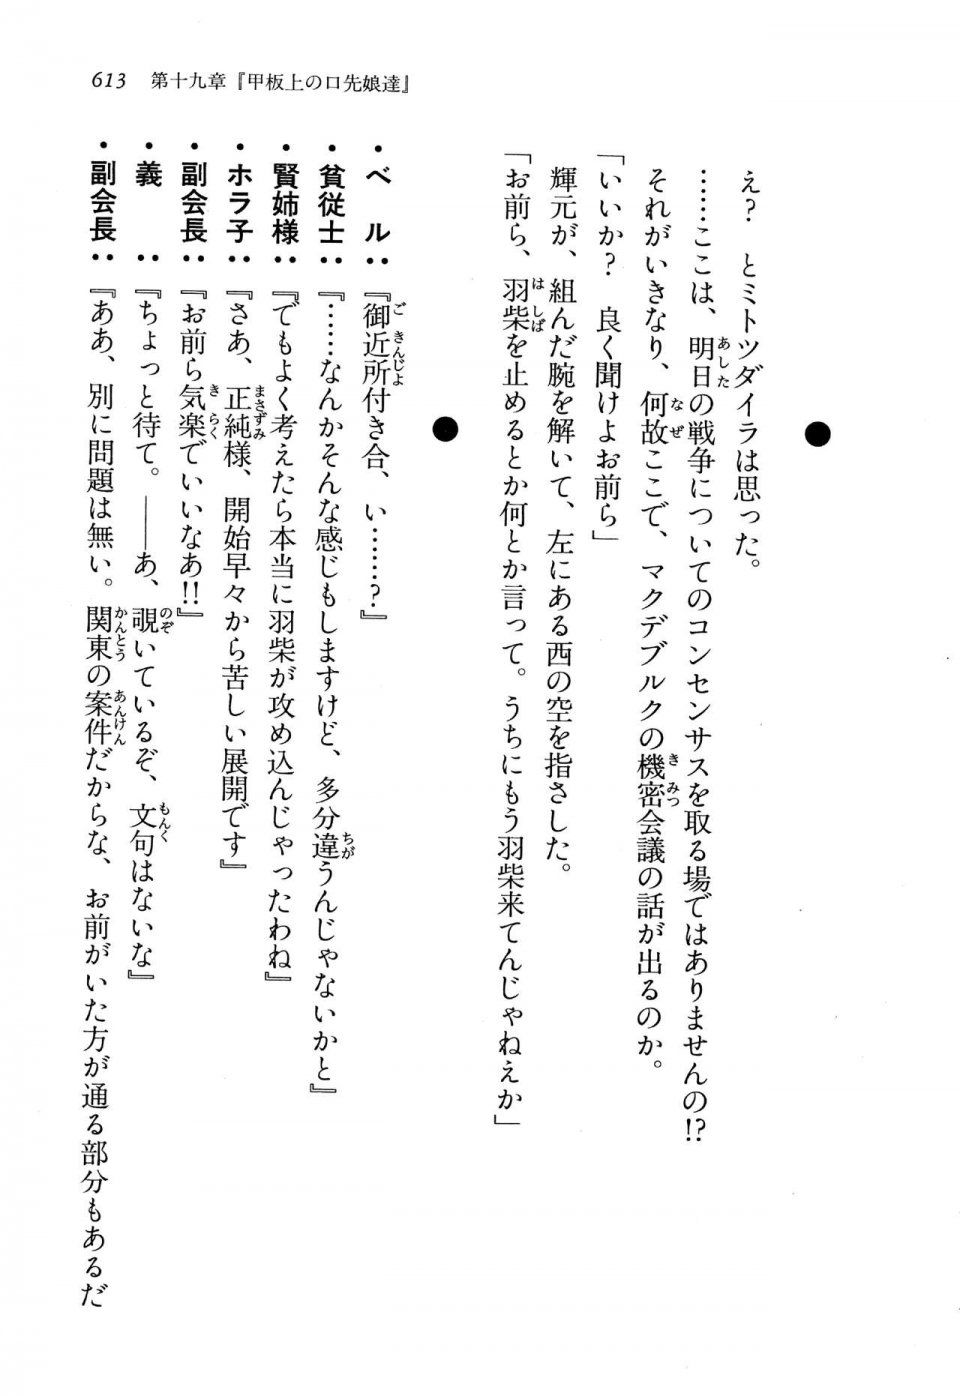 Kyoukai Senjou no Horizon LN Vol 13(6A) - Photo #613